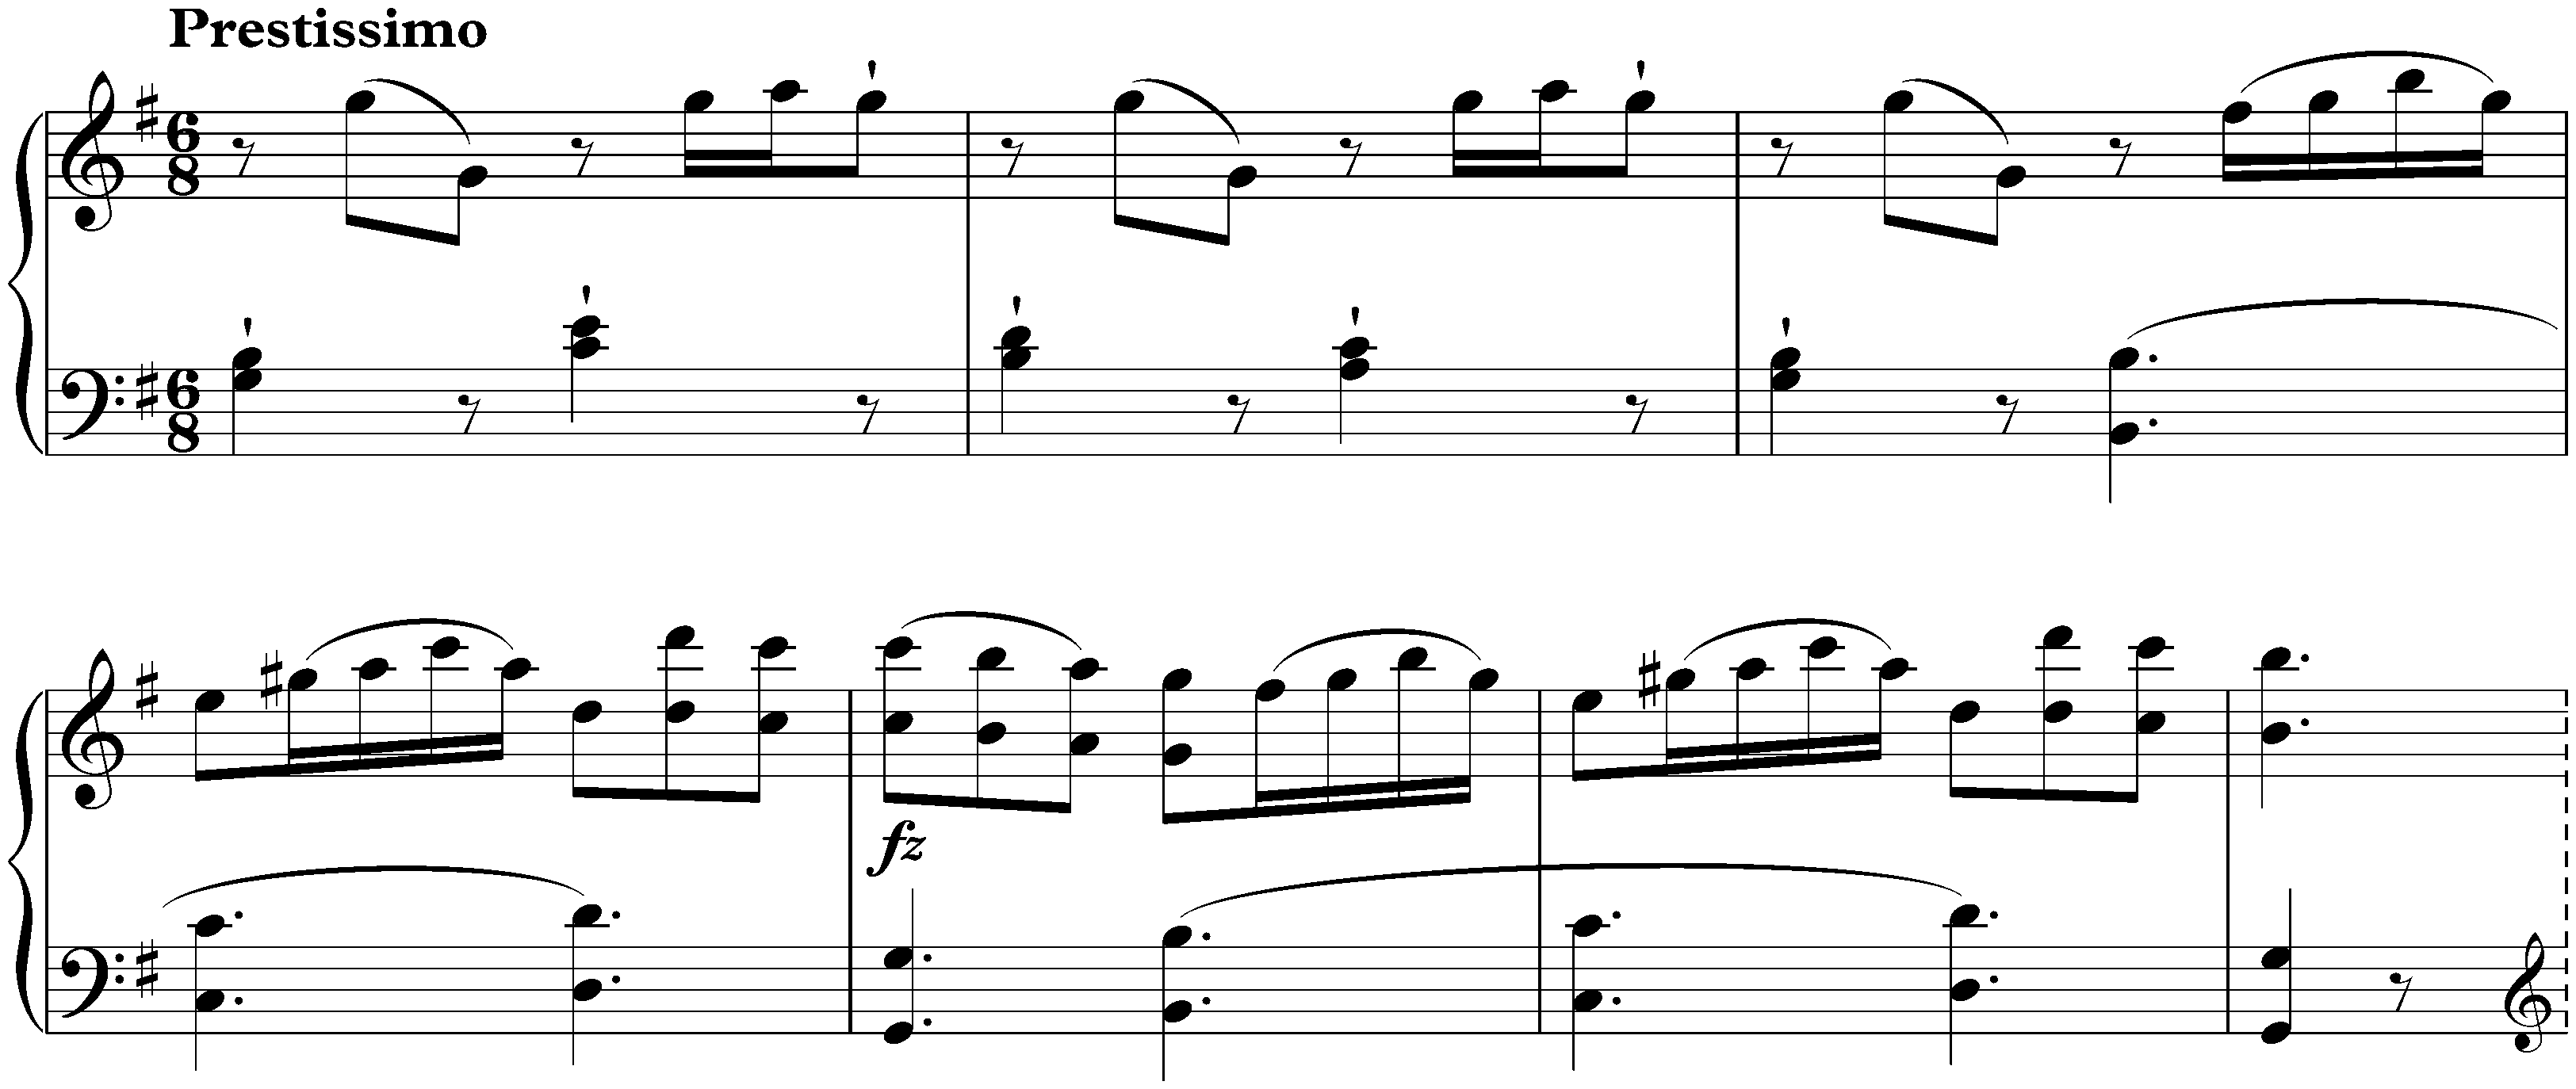 Sonata in G major, Hob. XVI:39; 3. Prestissimo